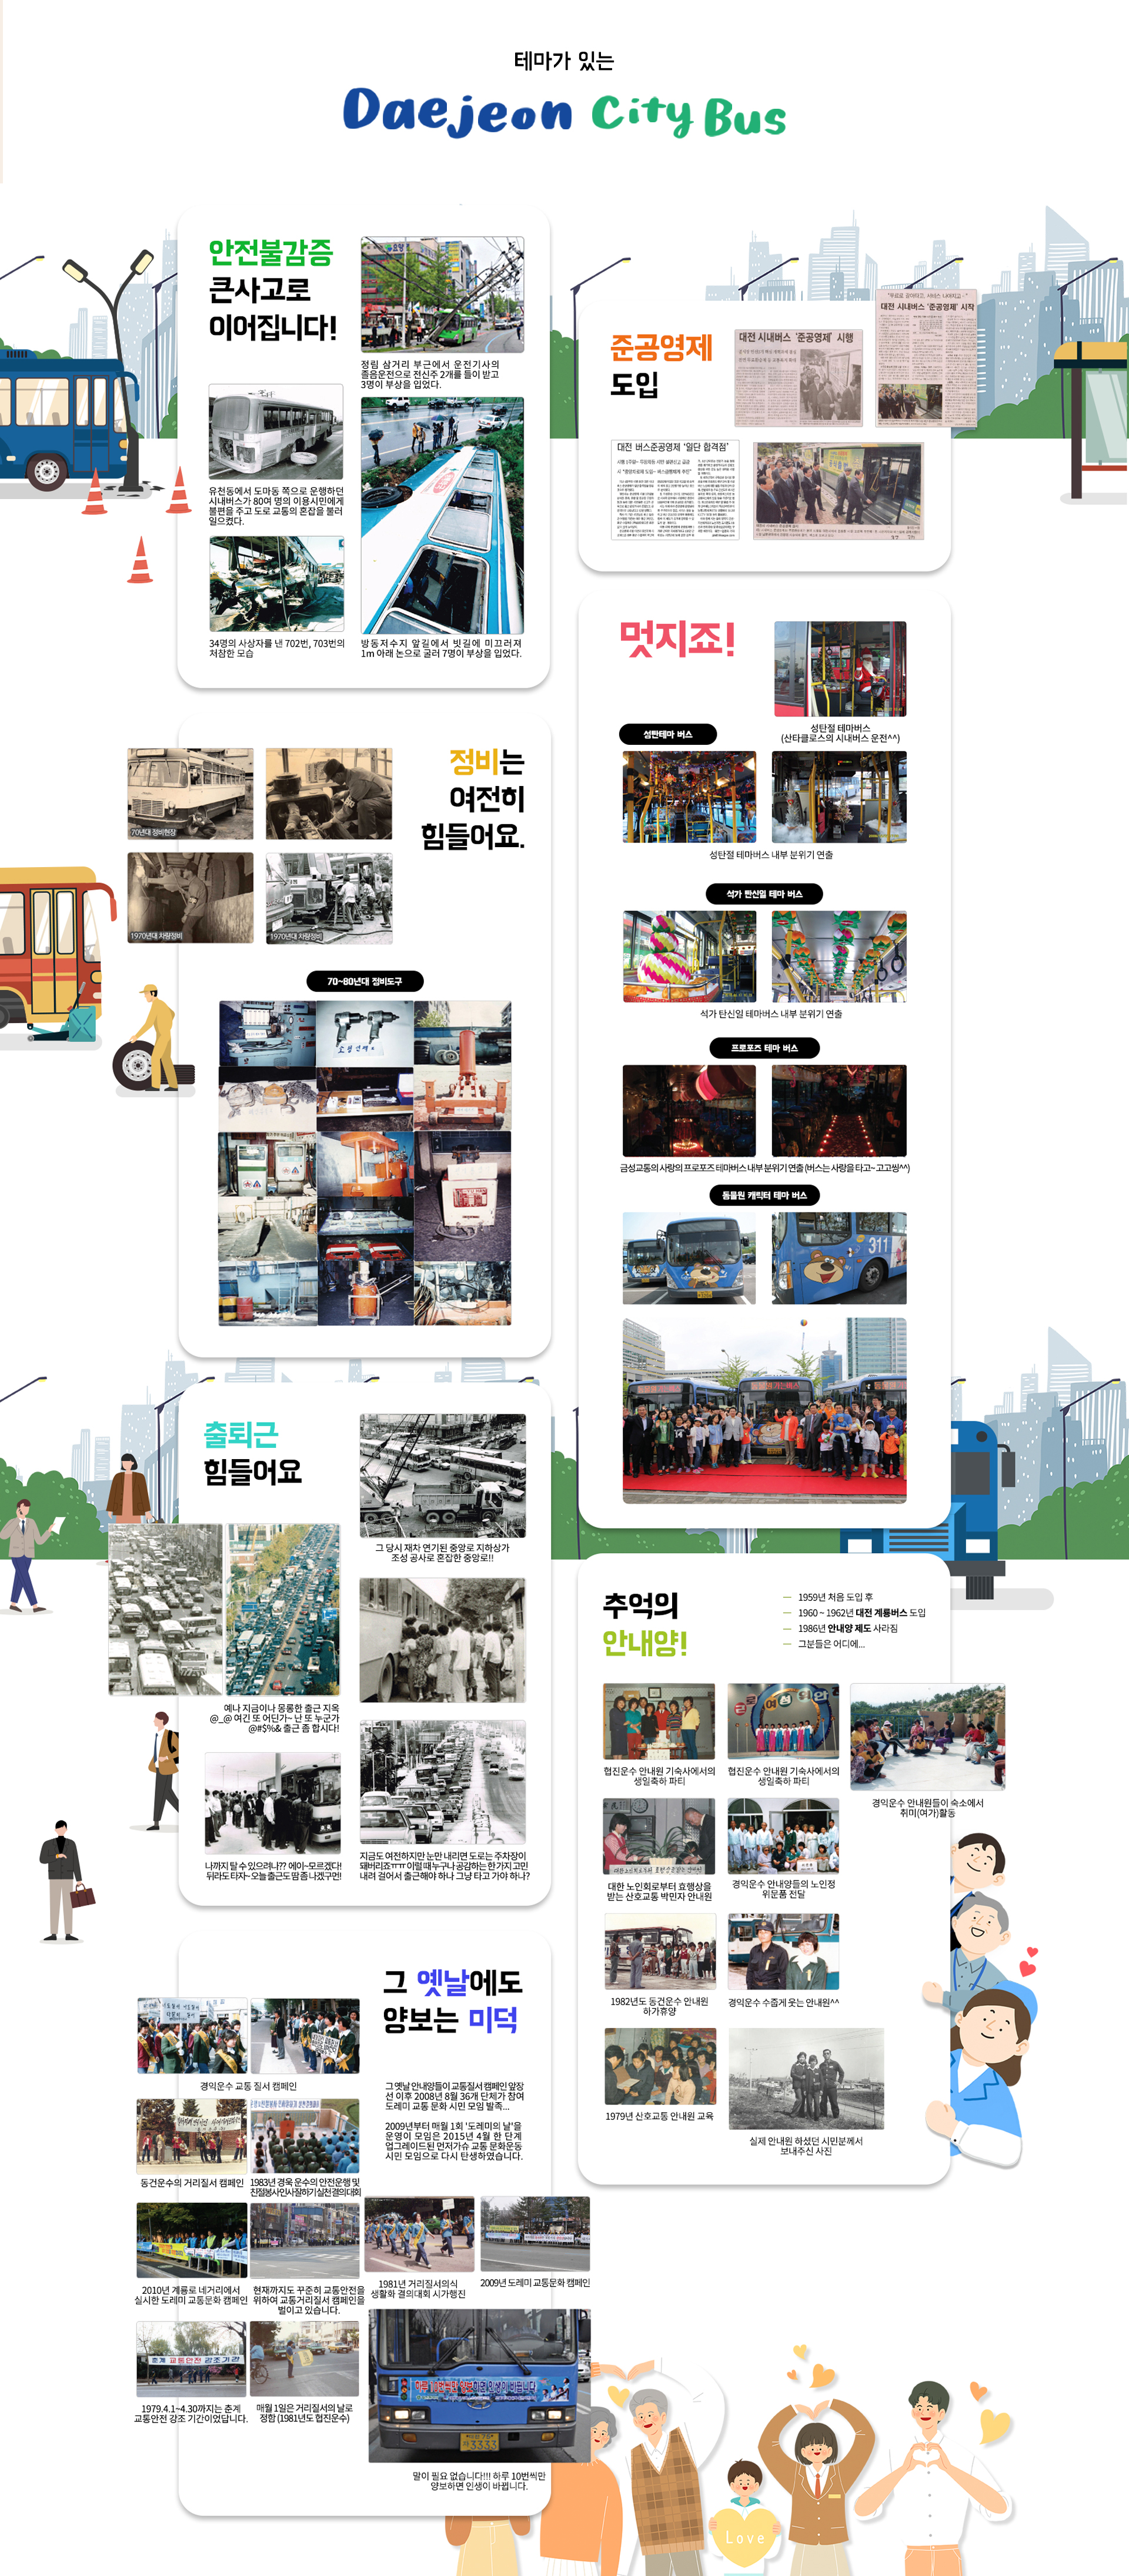 대전 시내버스의 역사에 대한 이미지